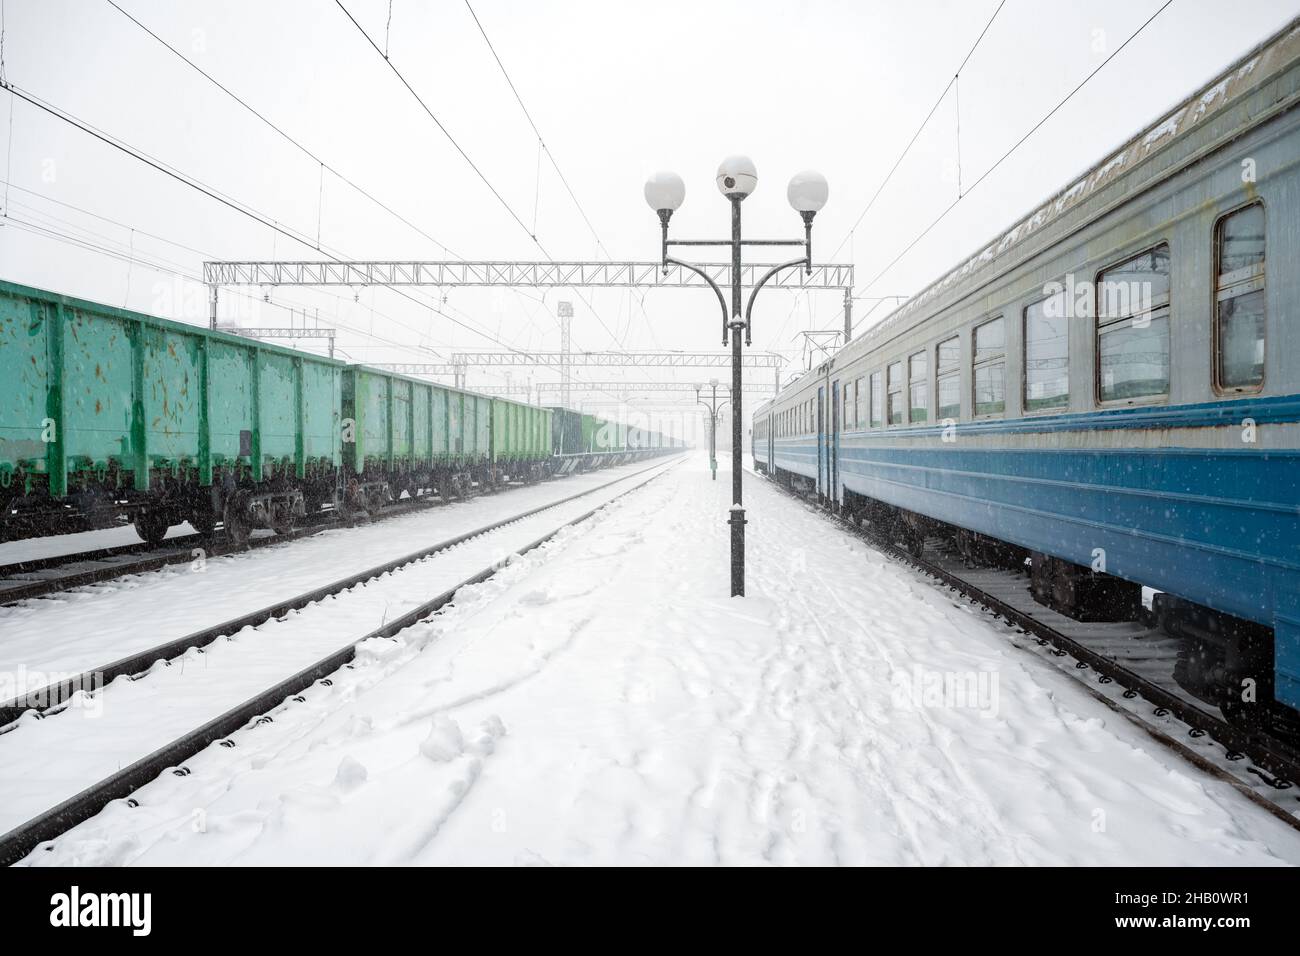 Stazione ferroviaria peron coperta di neve in inverno. Treno passeggeri e vagoni merci su rotaie innevate. Ucraina, Europa Foto Stock